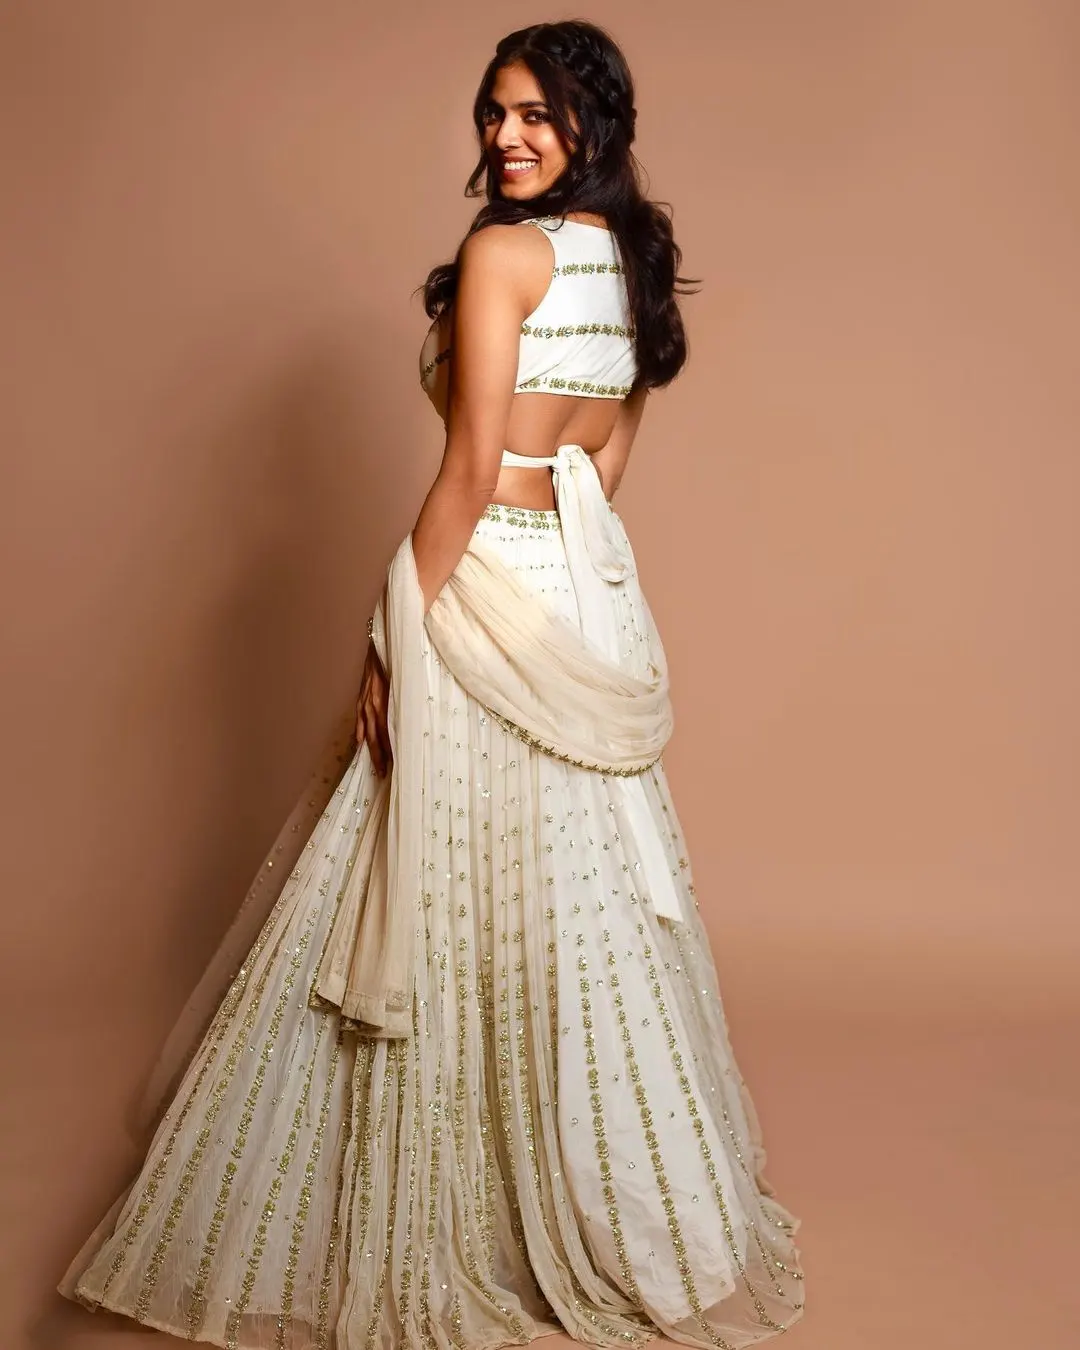 Malvika Mohanan Gorgeous Photos in White Dress